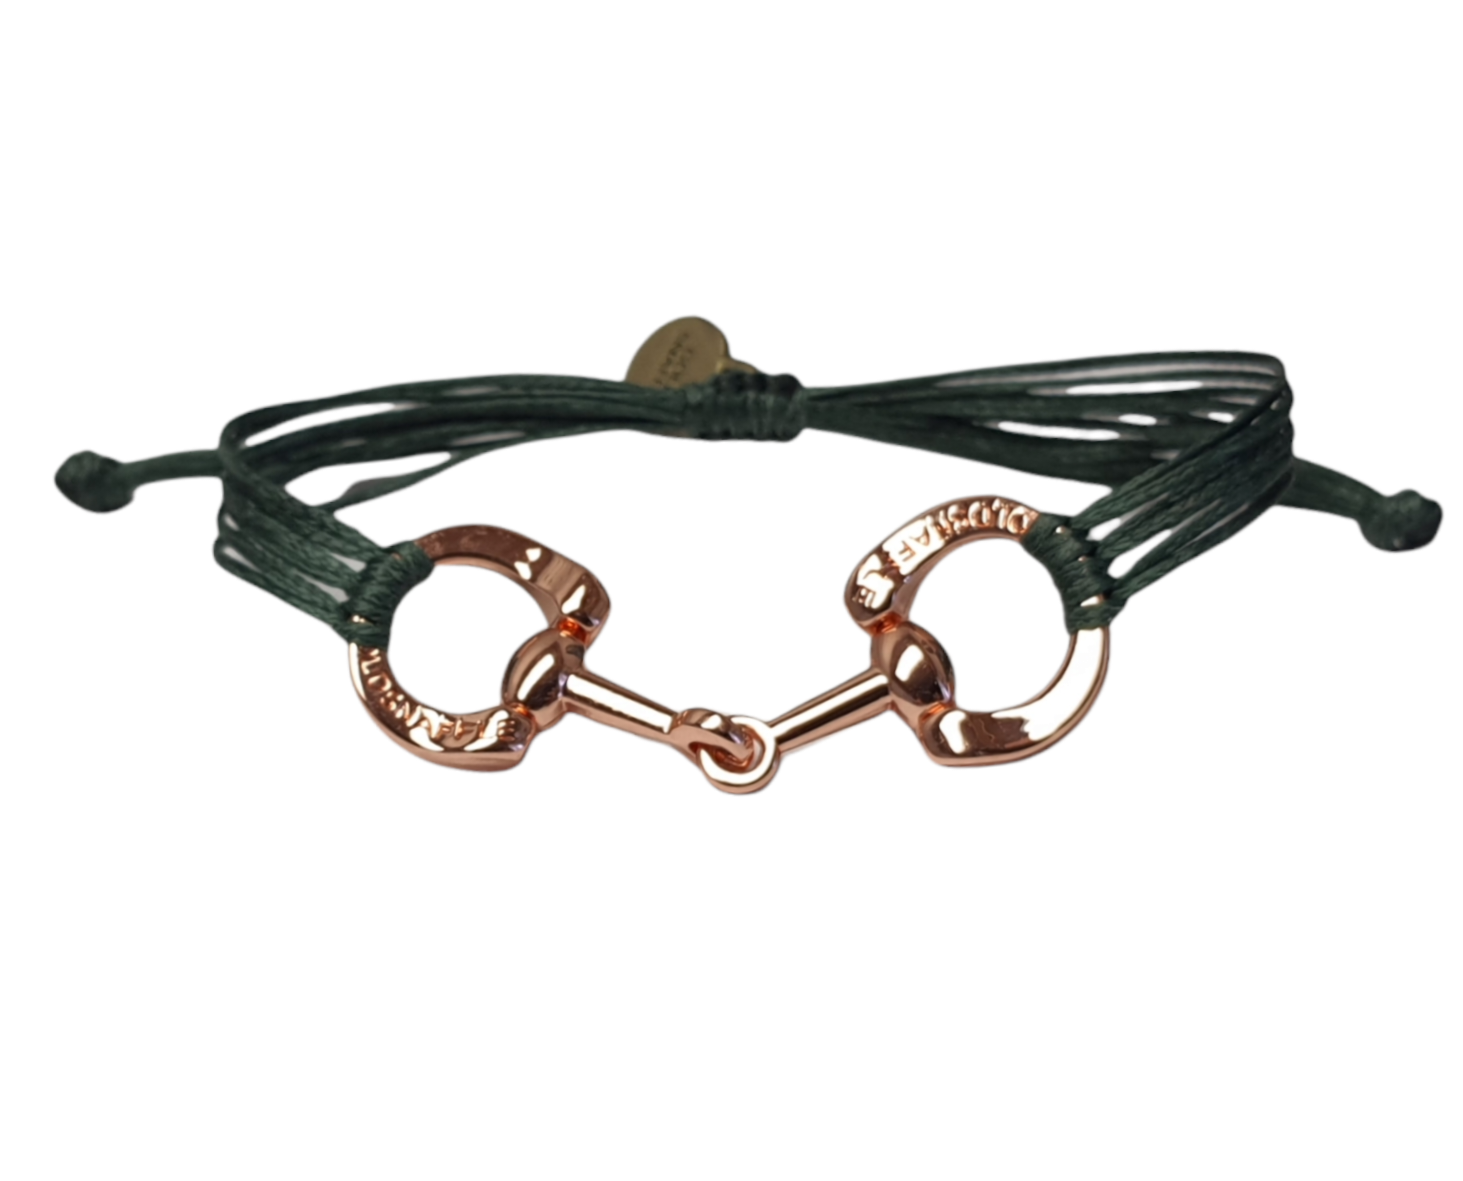 Rose gold horse bit snaffle bracelet in leather string